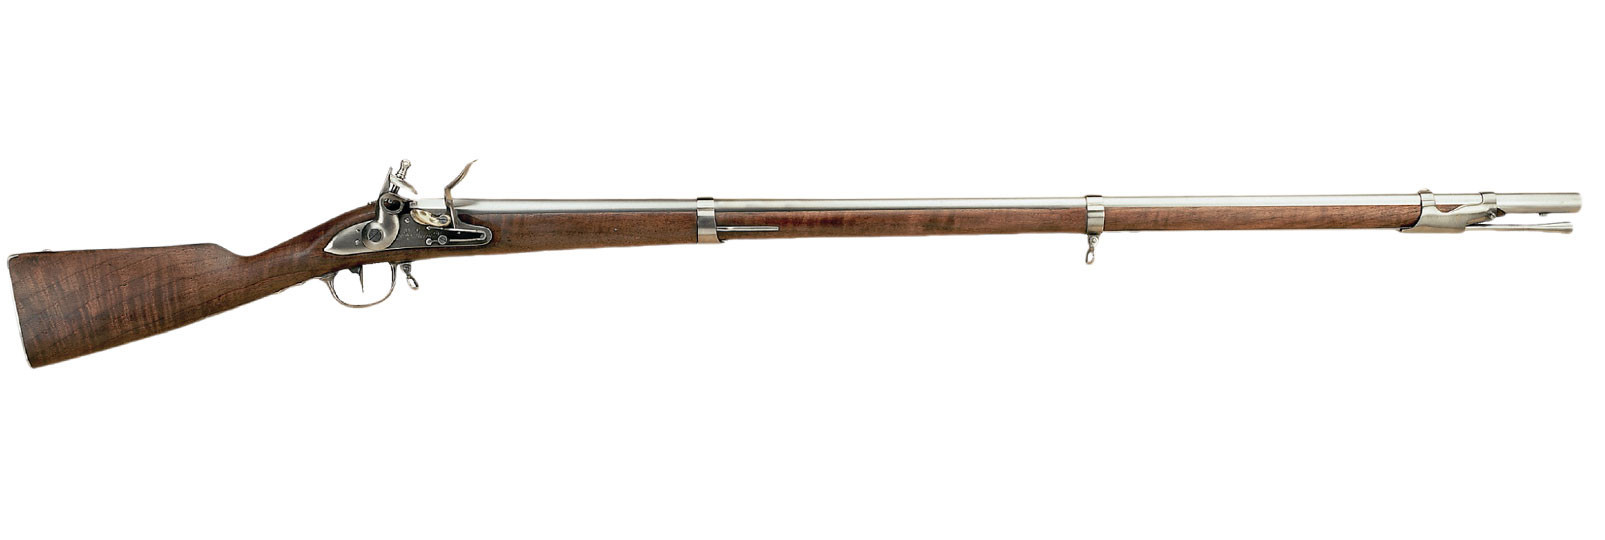 1777 Revolutionnaire Rifle